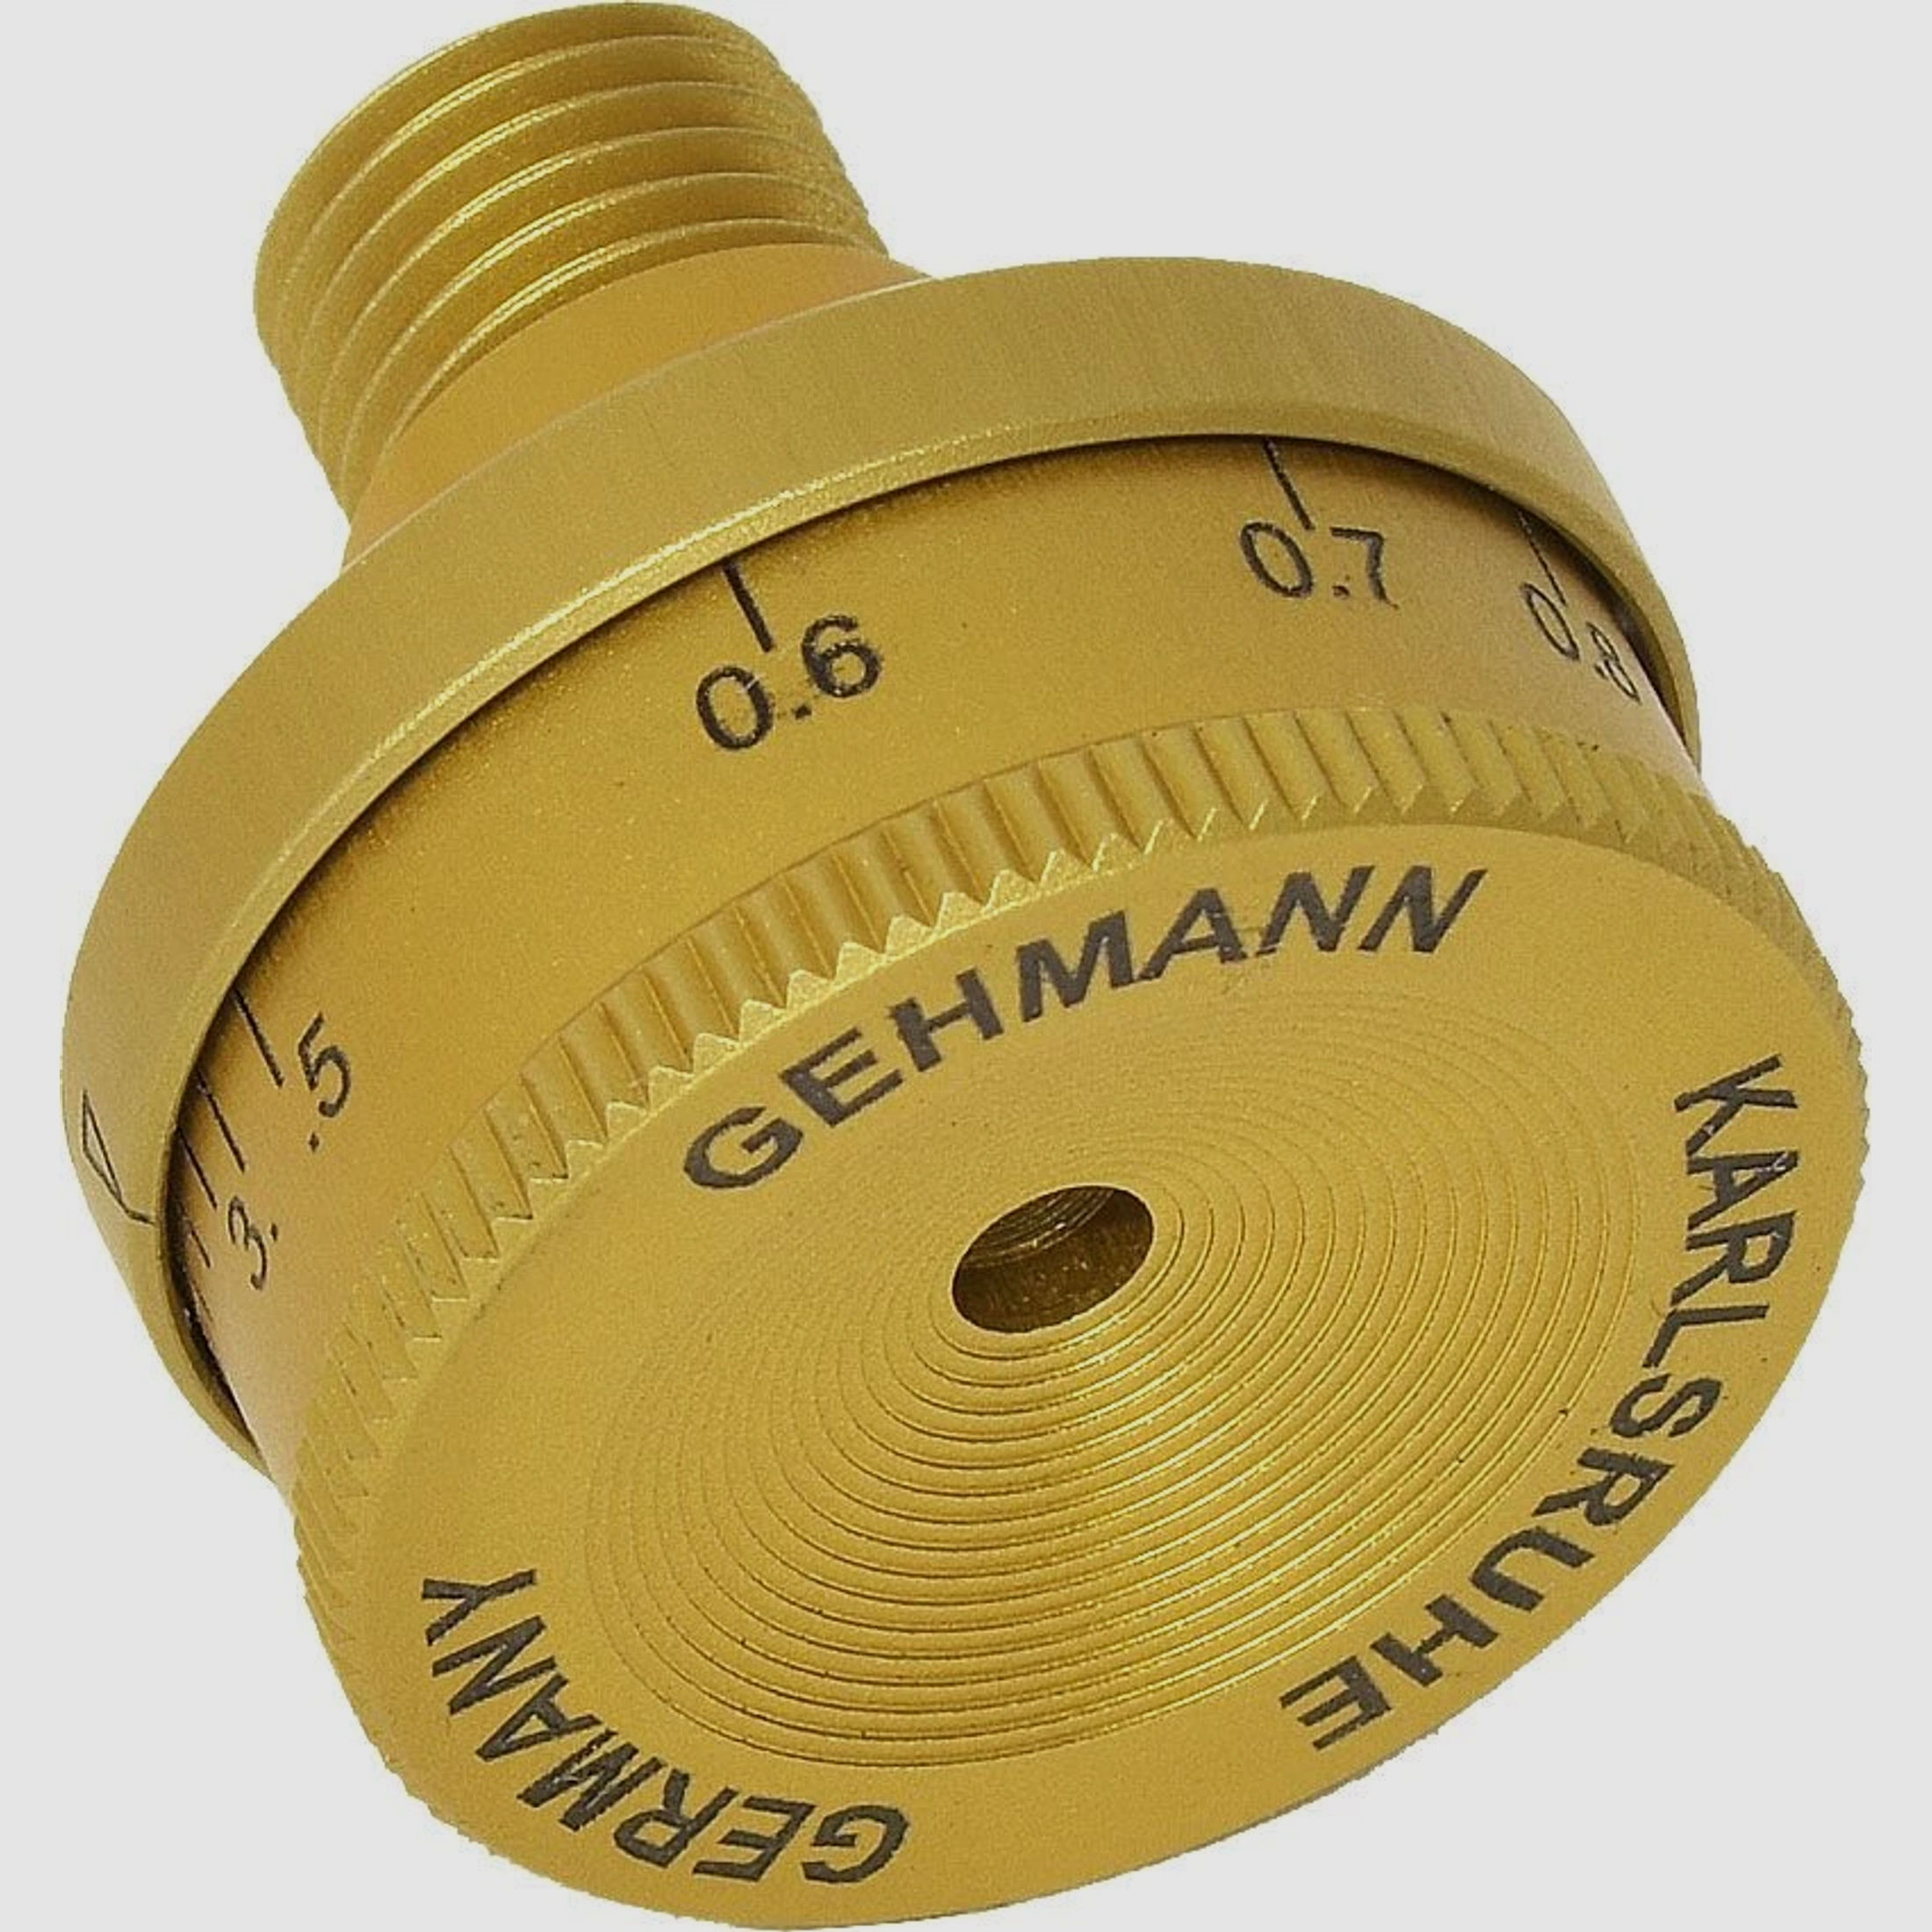 Gehmann Iris-Diopterscheibe Gold Limited Edition